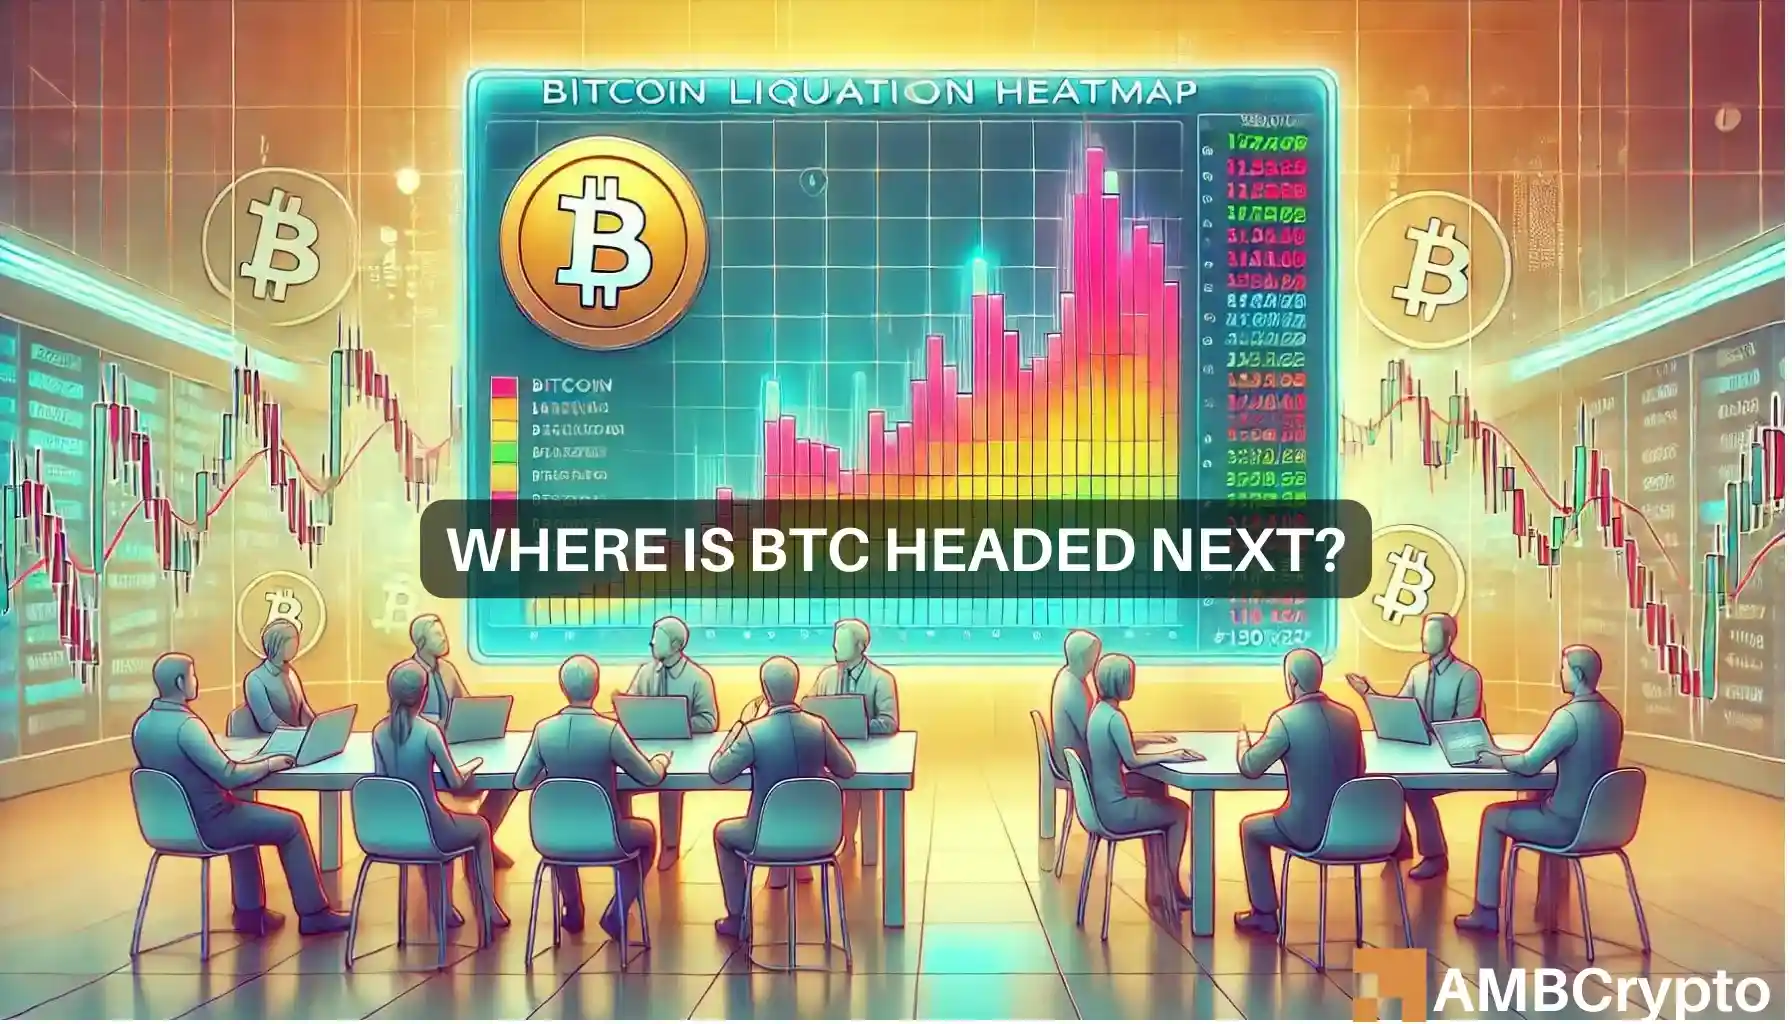 Bitcoin liquidation heatmap signals danger: Could BTC drop to $60k?